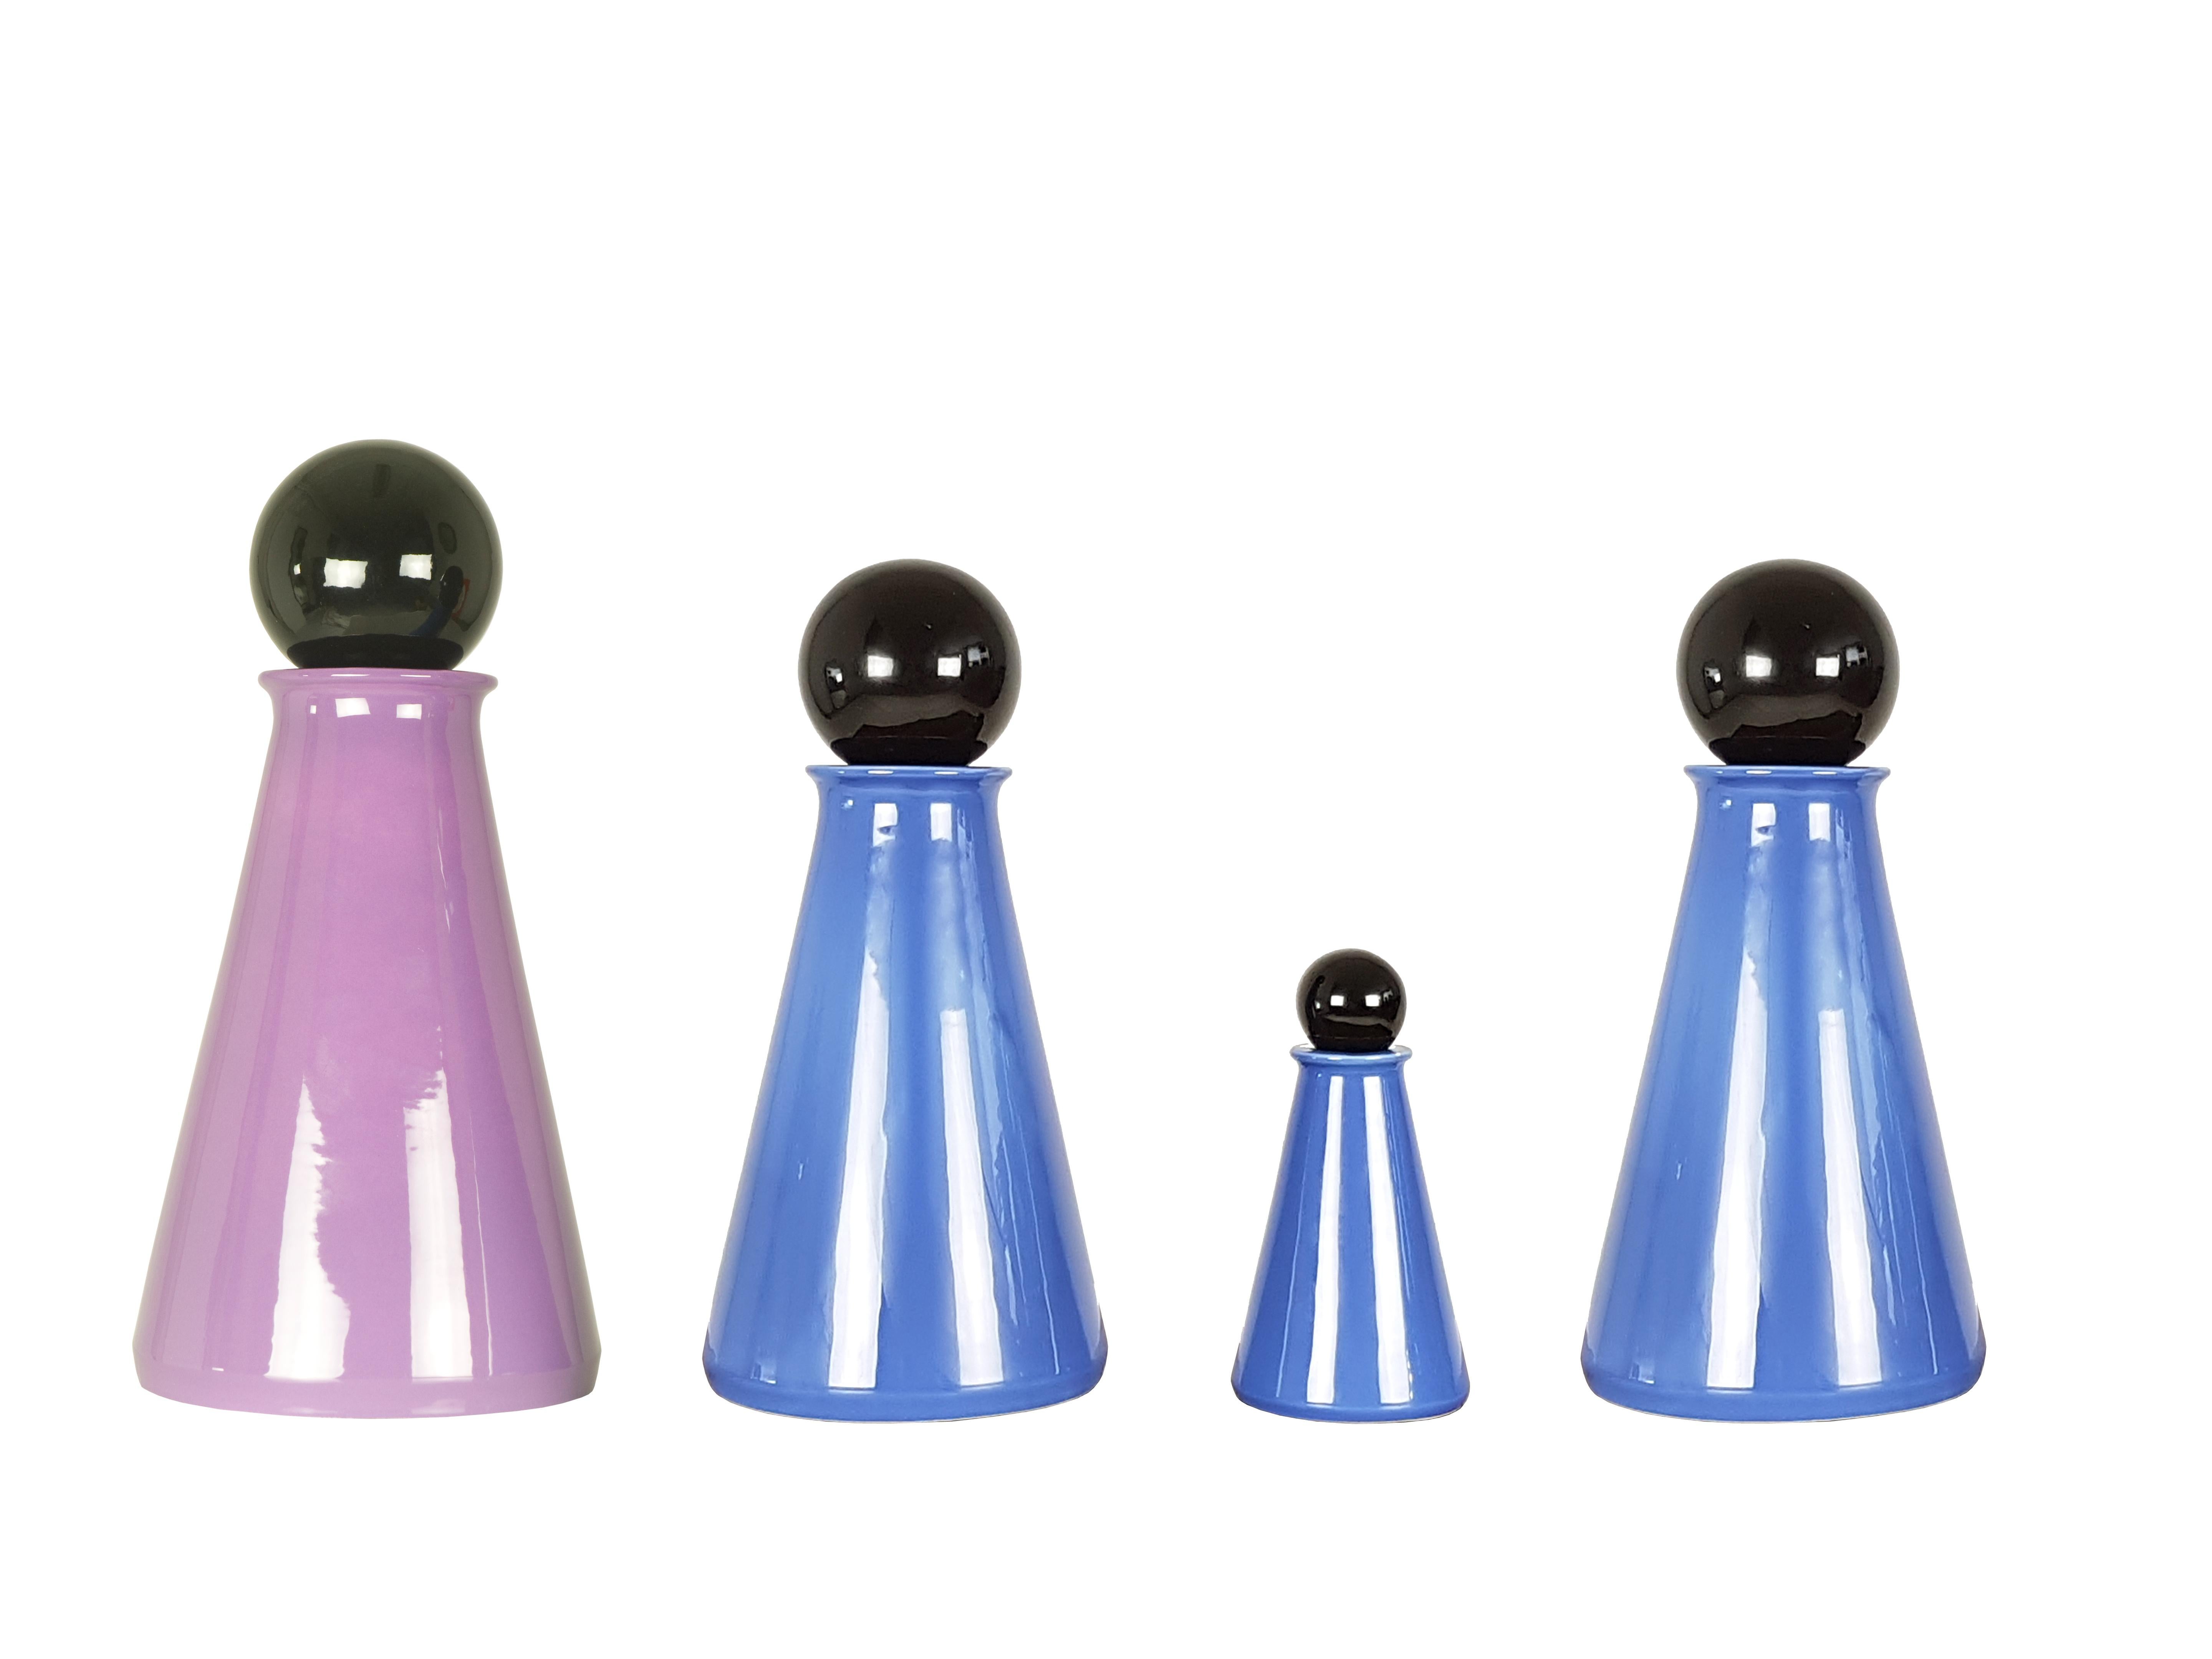 Set of 4 decorative bottles made from blue/violet and black ceramic.
Measures: 
Big bottle: cm 43 H x 21 D
Medium bottle: cm 36 H x 18 D
Small bottle: cm 20 H x 11 D.  
  